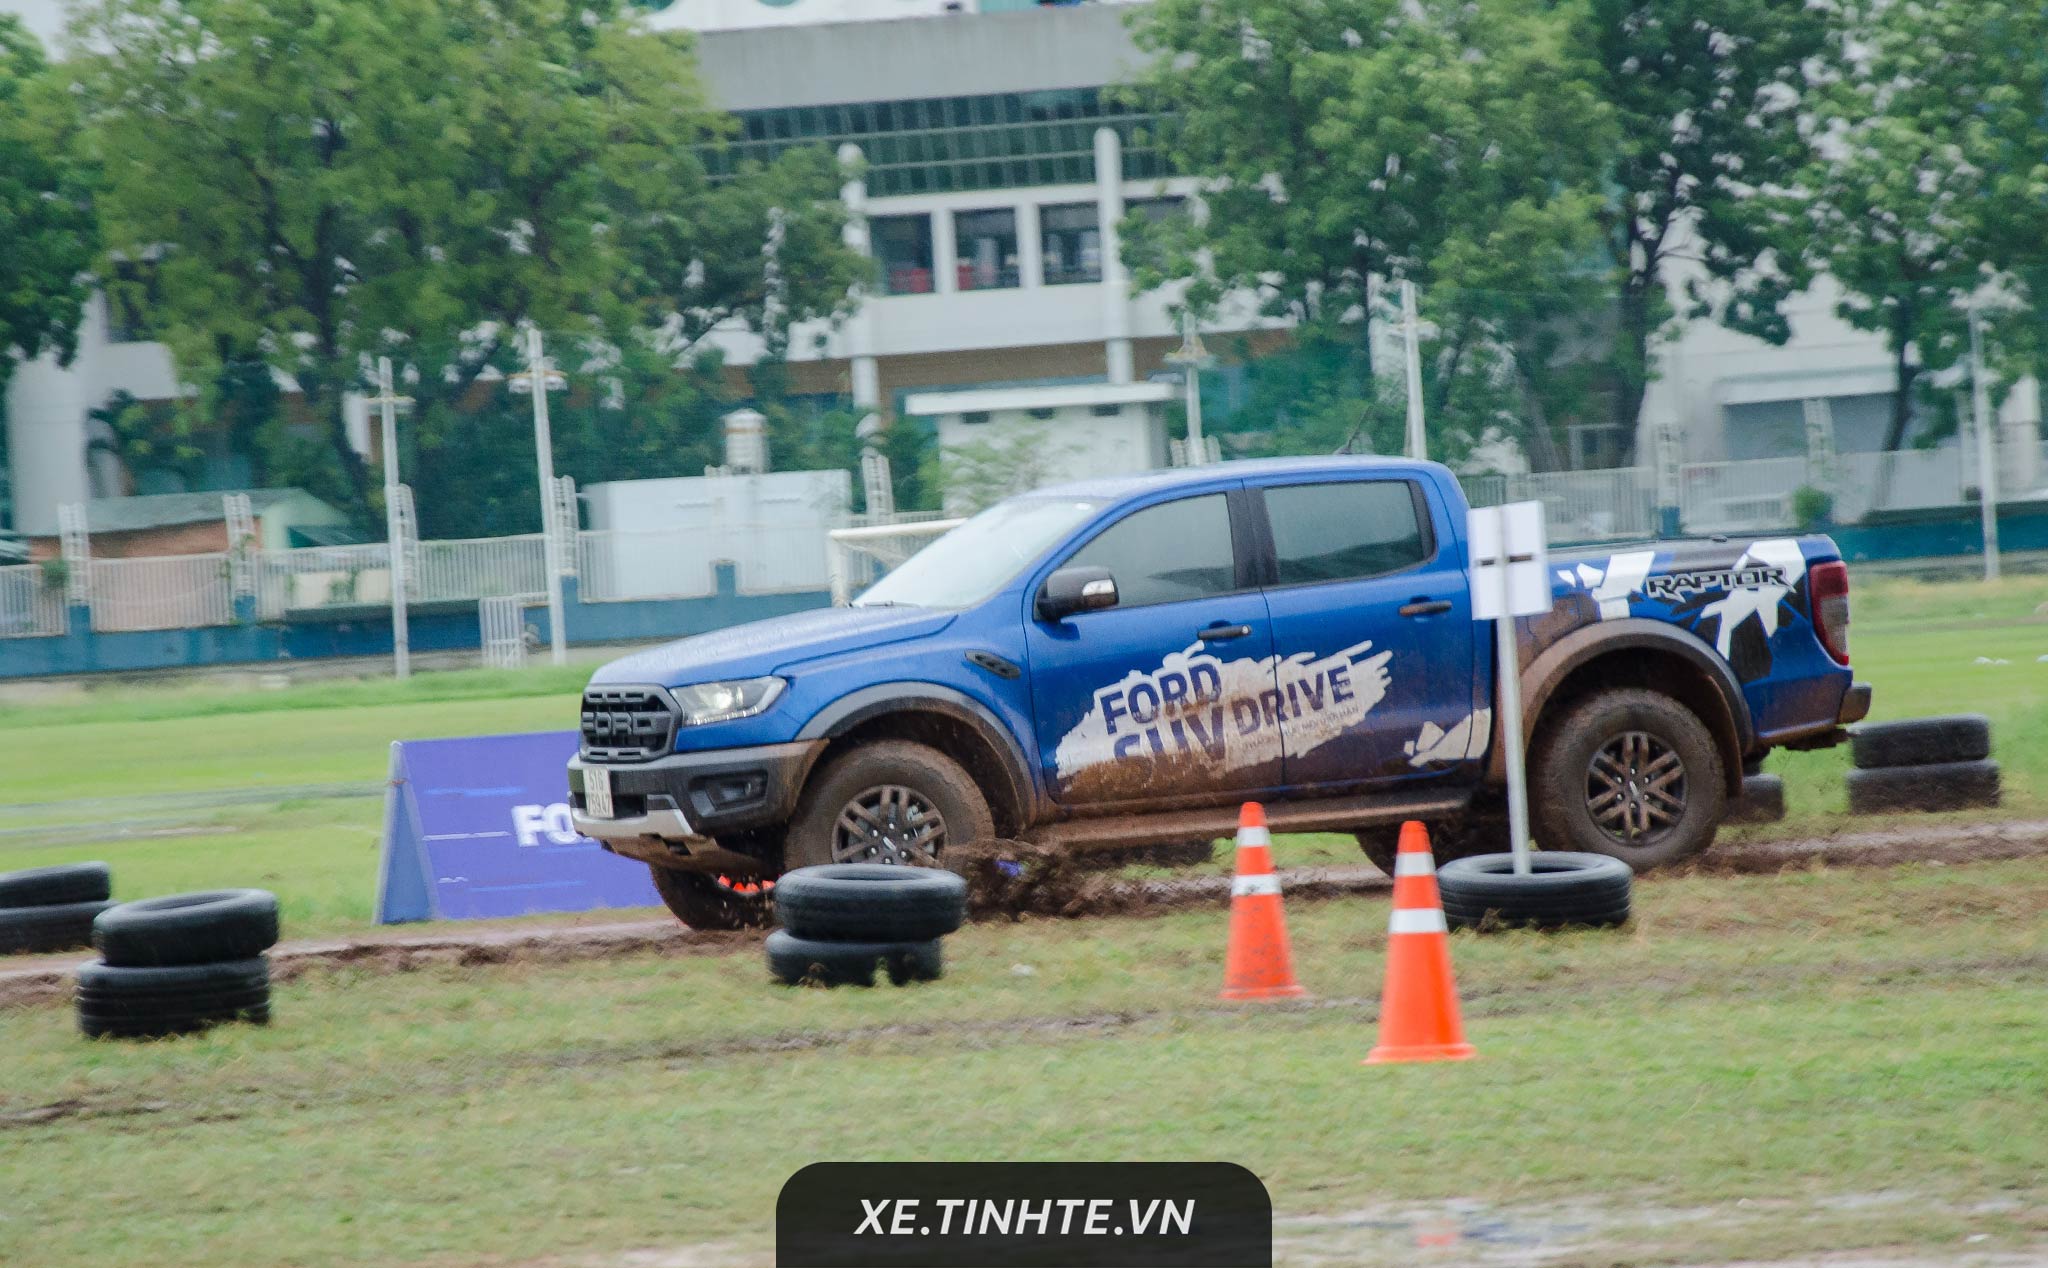 Ford tổ chức trải nghiệm offroad tại Hà Nội và Sài Gòn, nhiều sa hình khó, có lái thử Ranger Raptor